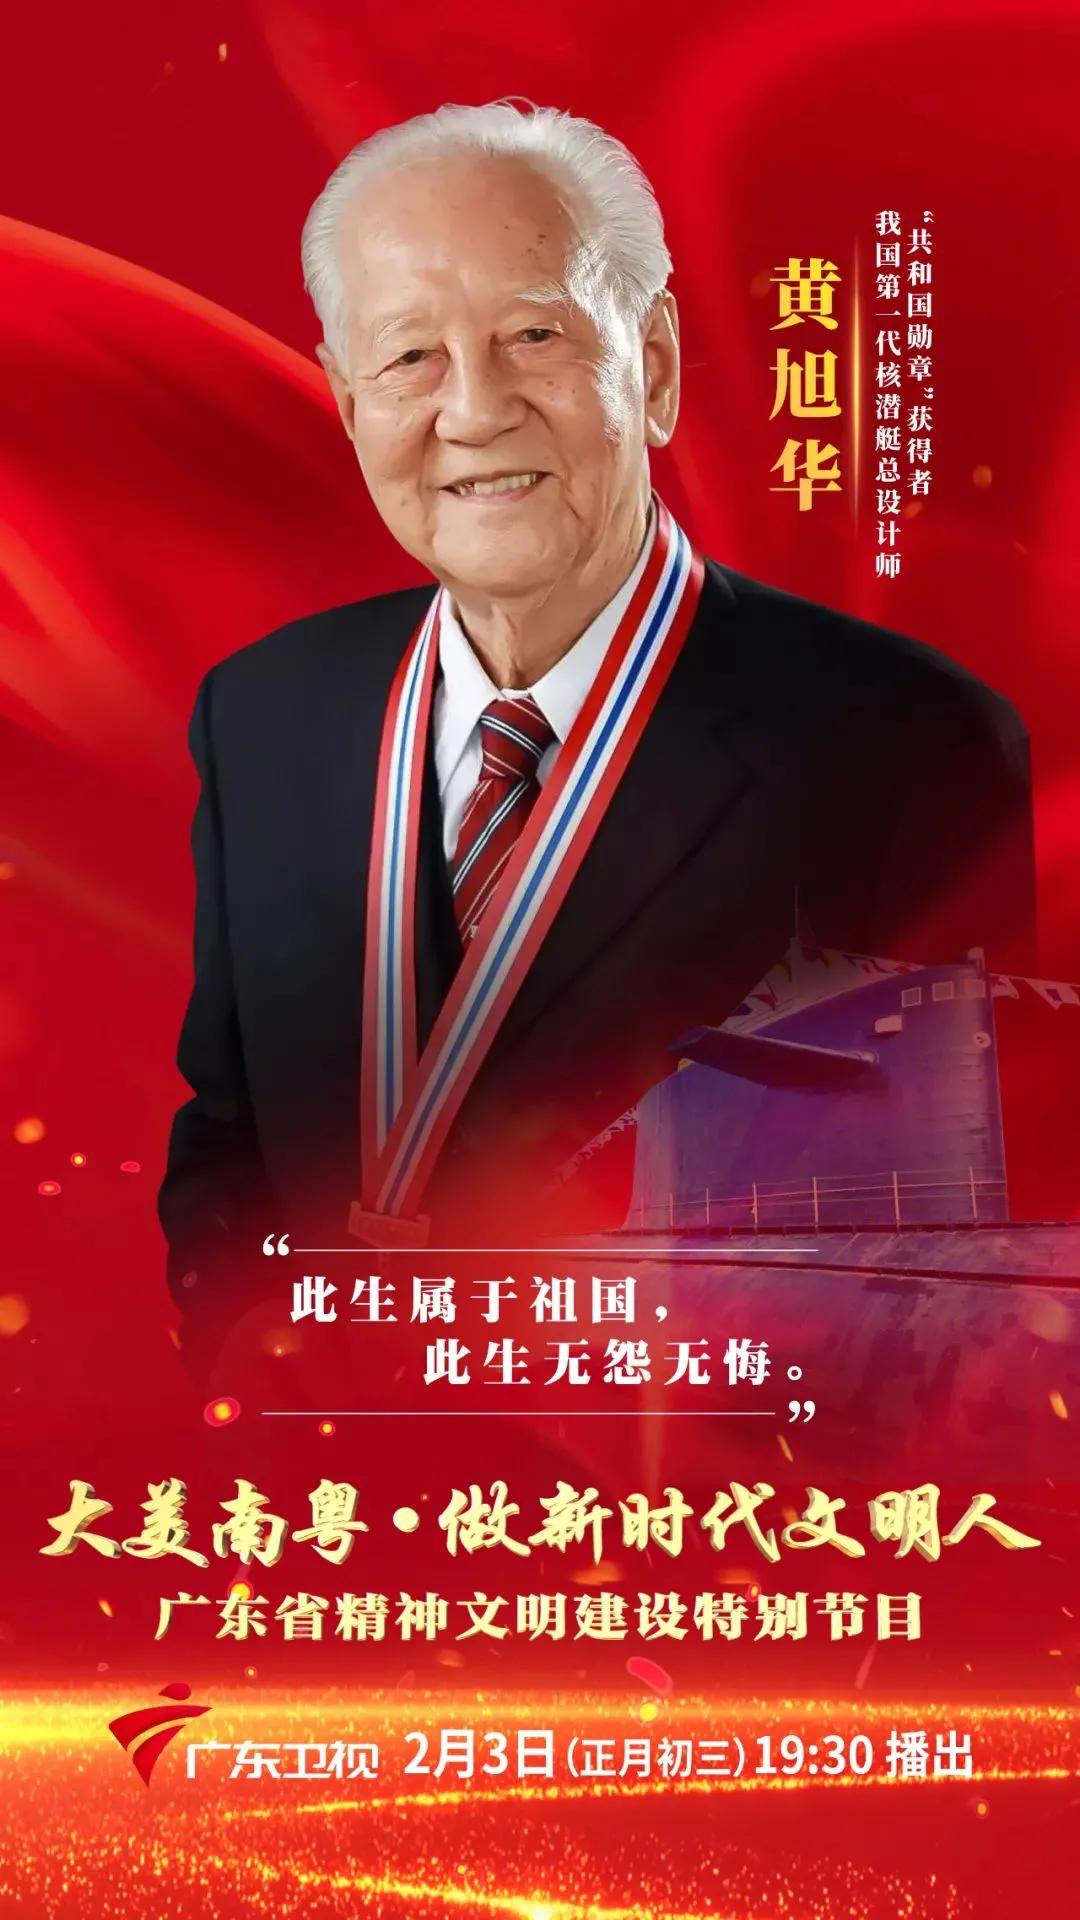 被誉为中国核潜艇之父的黄旭华,阔别家乡,隐姓埋名三十年,全心投入